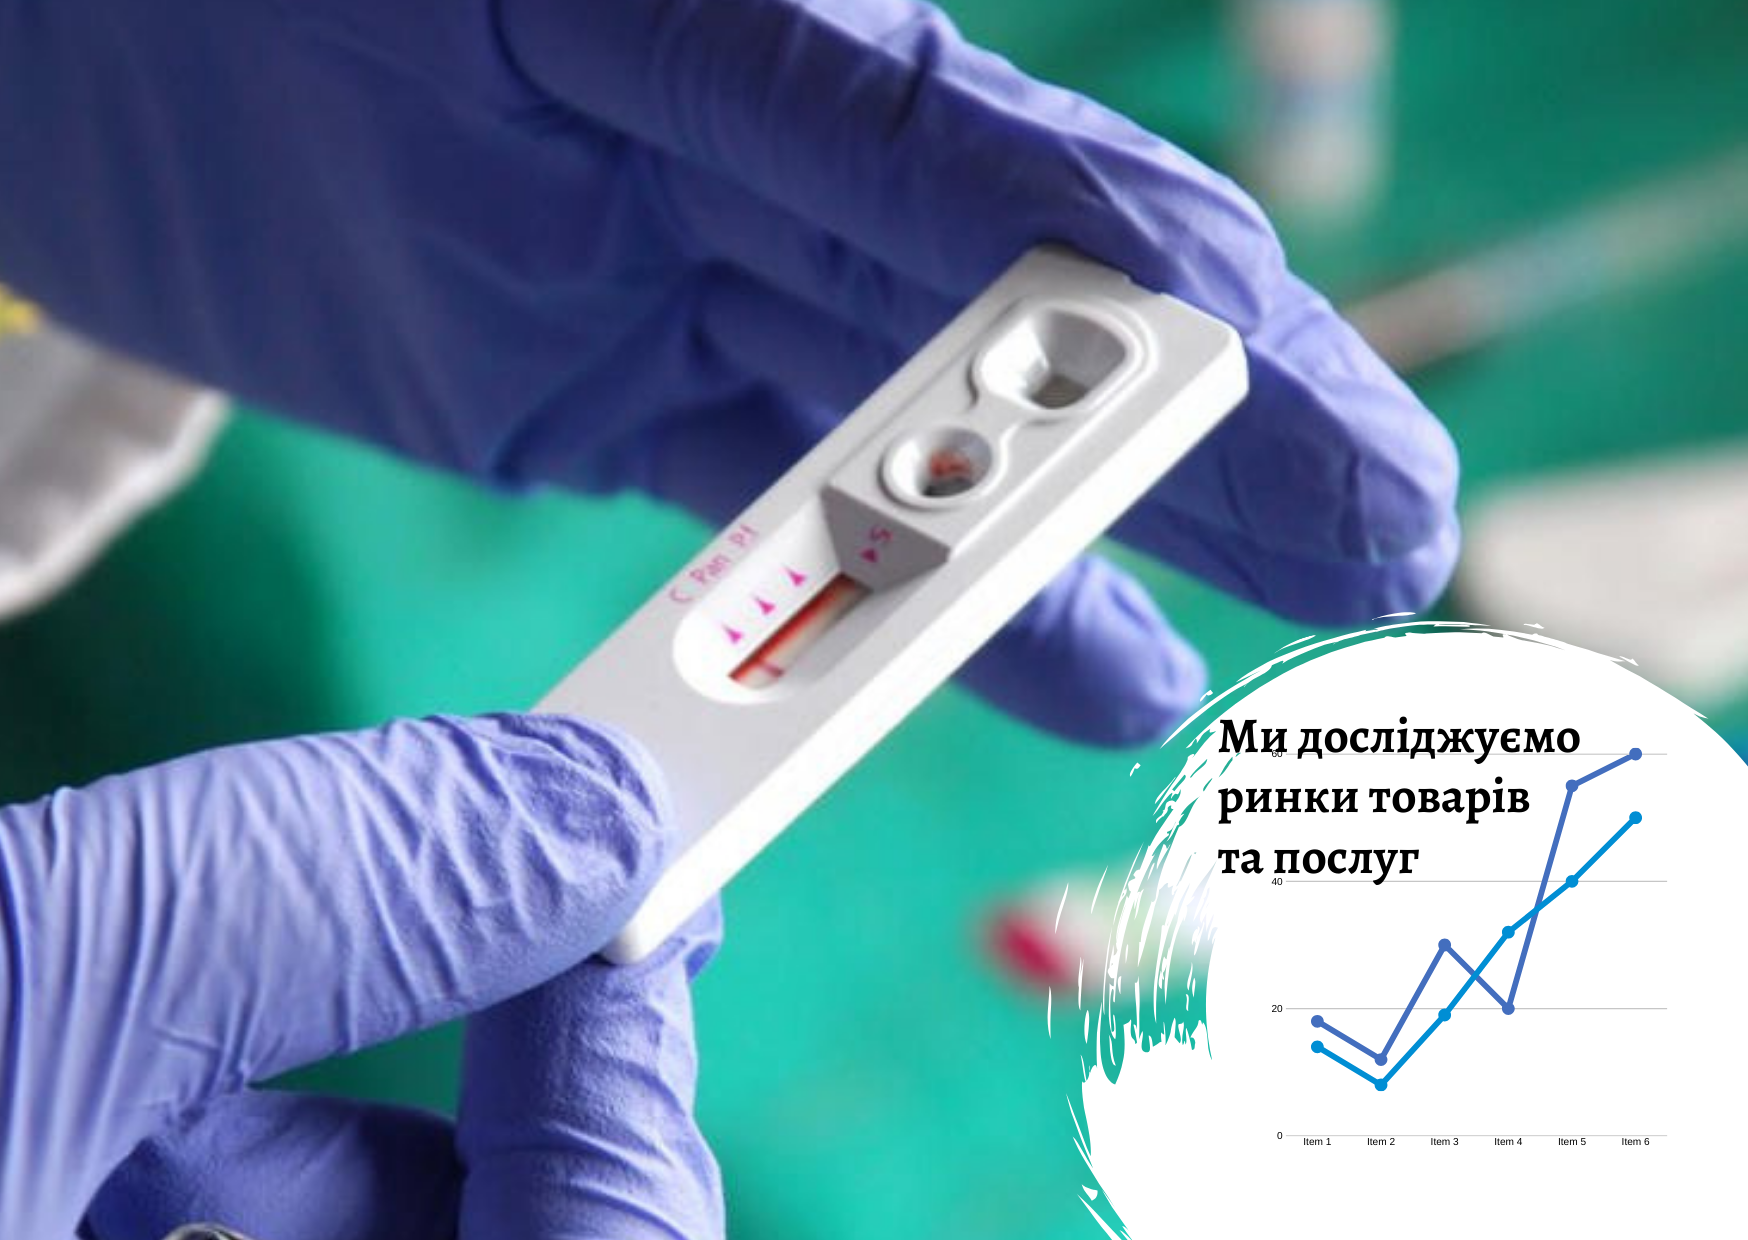 Рынок медицинских тестов в сегменте «аллергическая панель» в Украине: возможности и риски